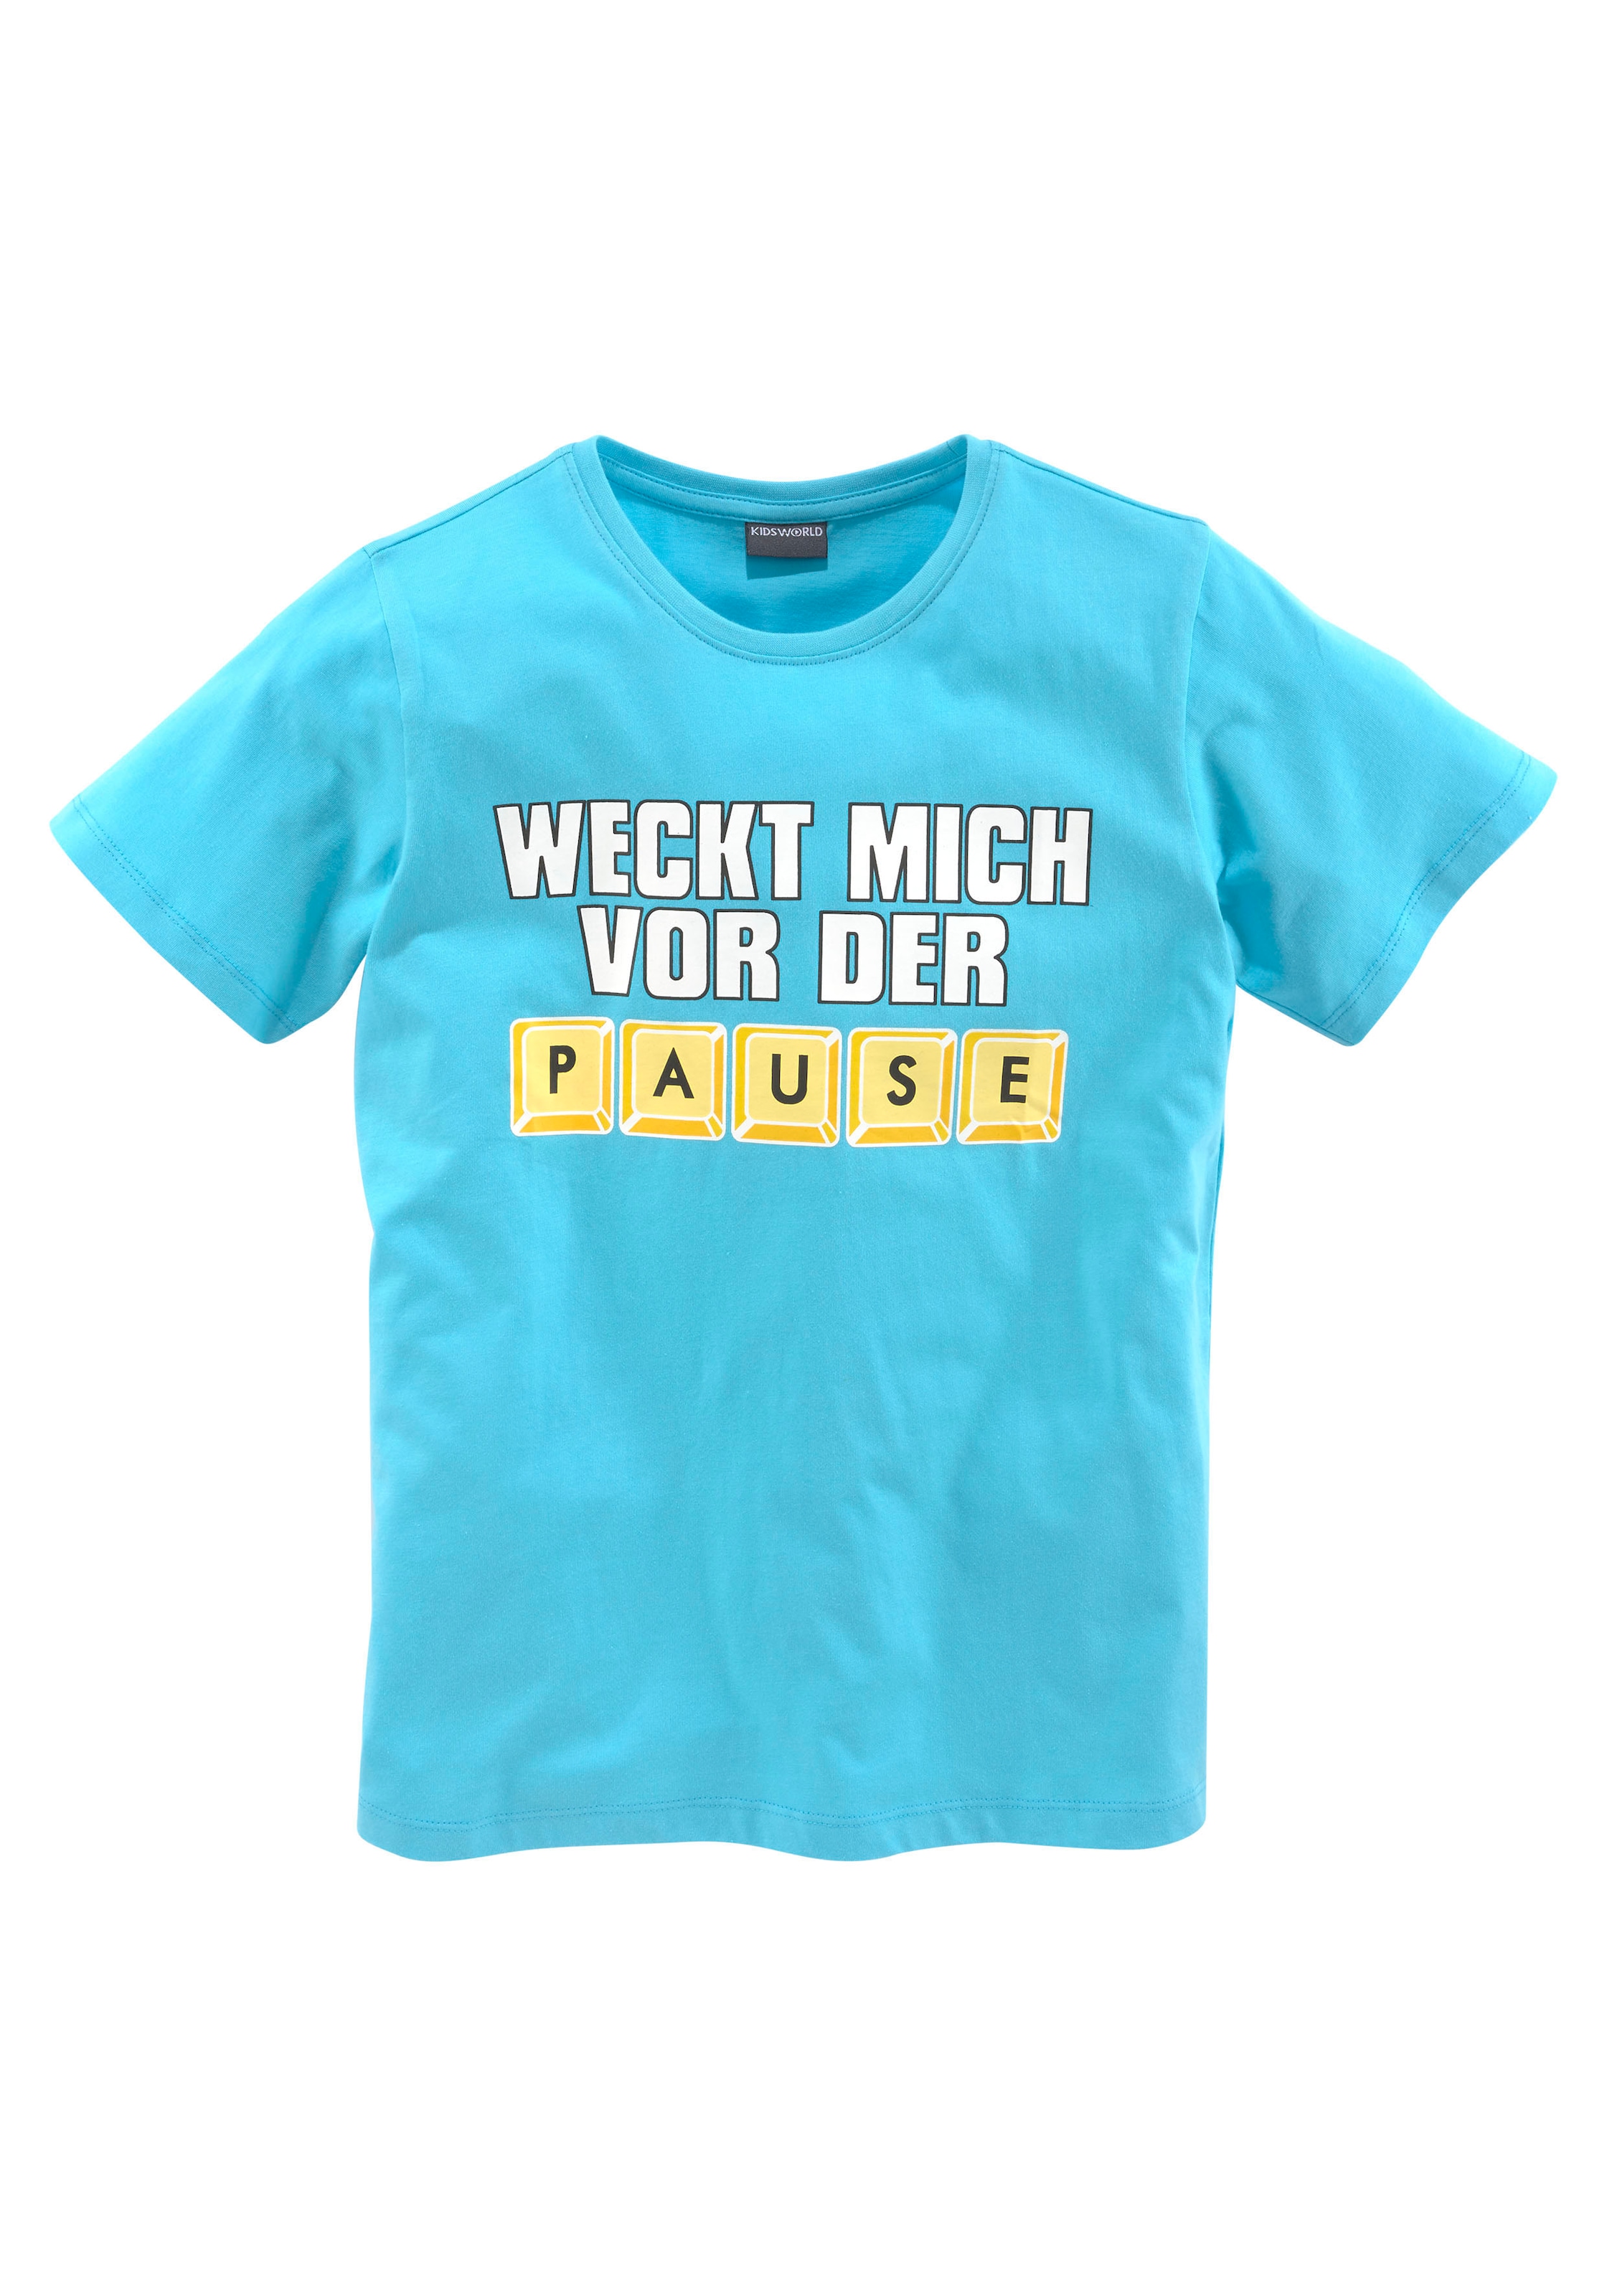 KIDSWORLD T-Shirt »WECK MICH VOR DER bei PAUSE«, Spruch